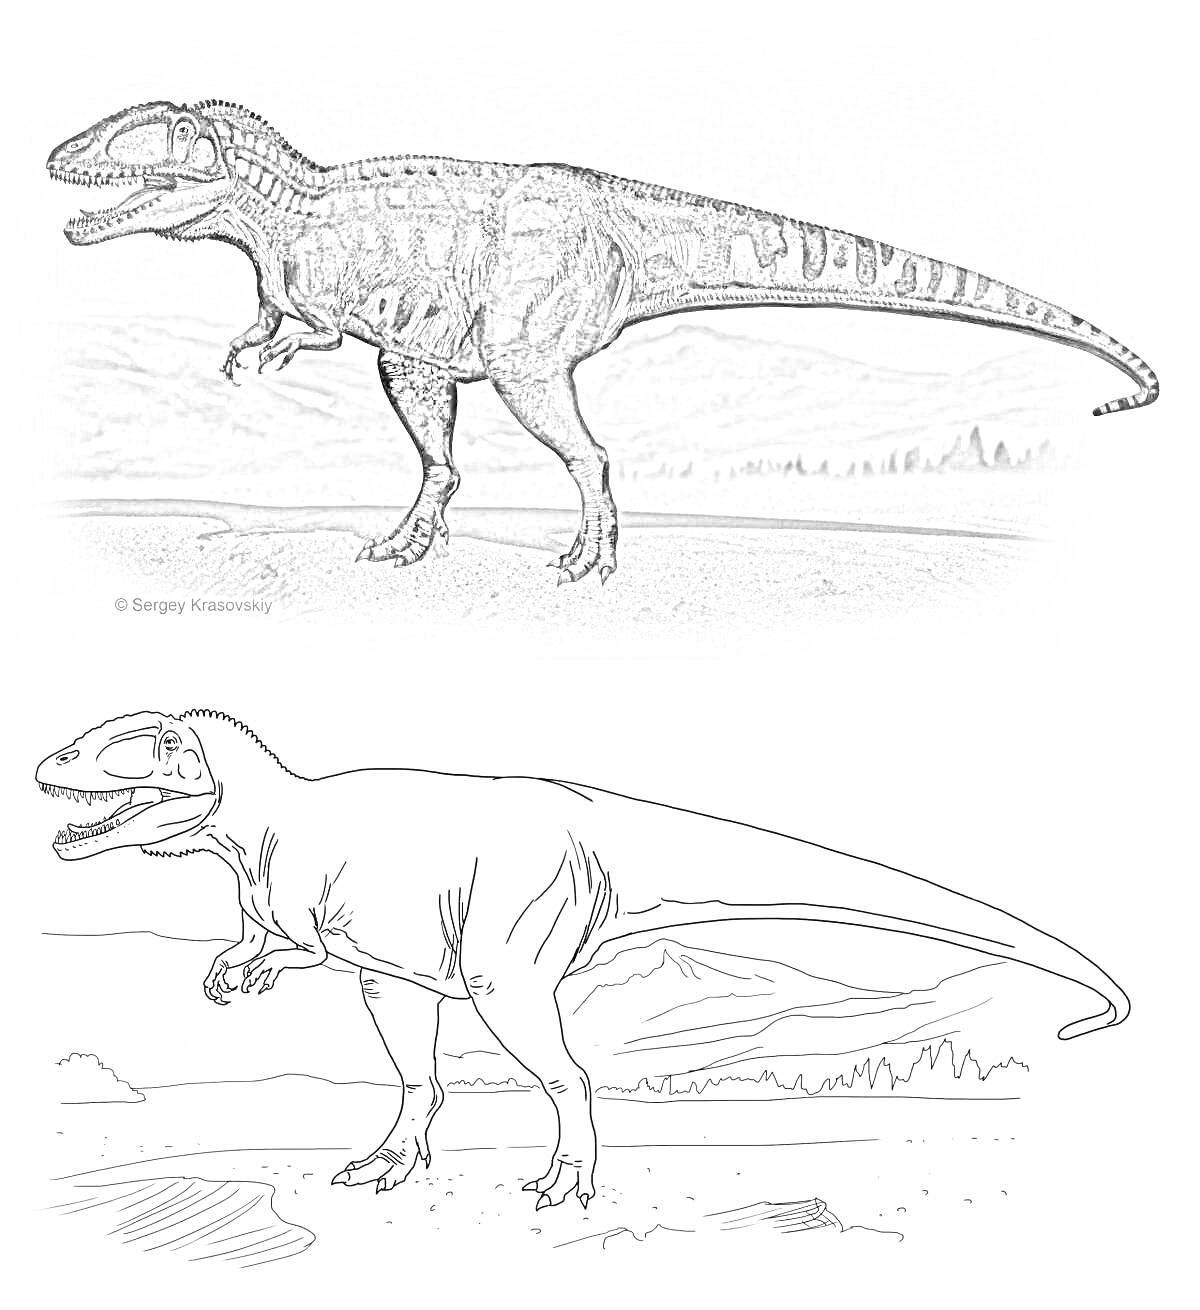 Раскраска кархародонтозавр в двух вариантах - цветном и раскраске, на фоне горного пейзажа